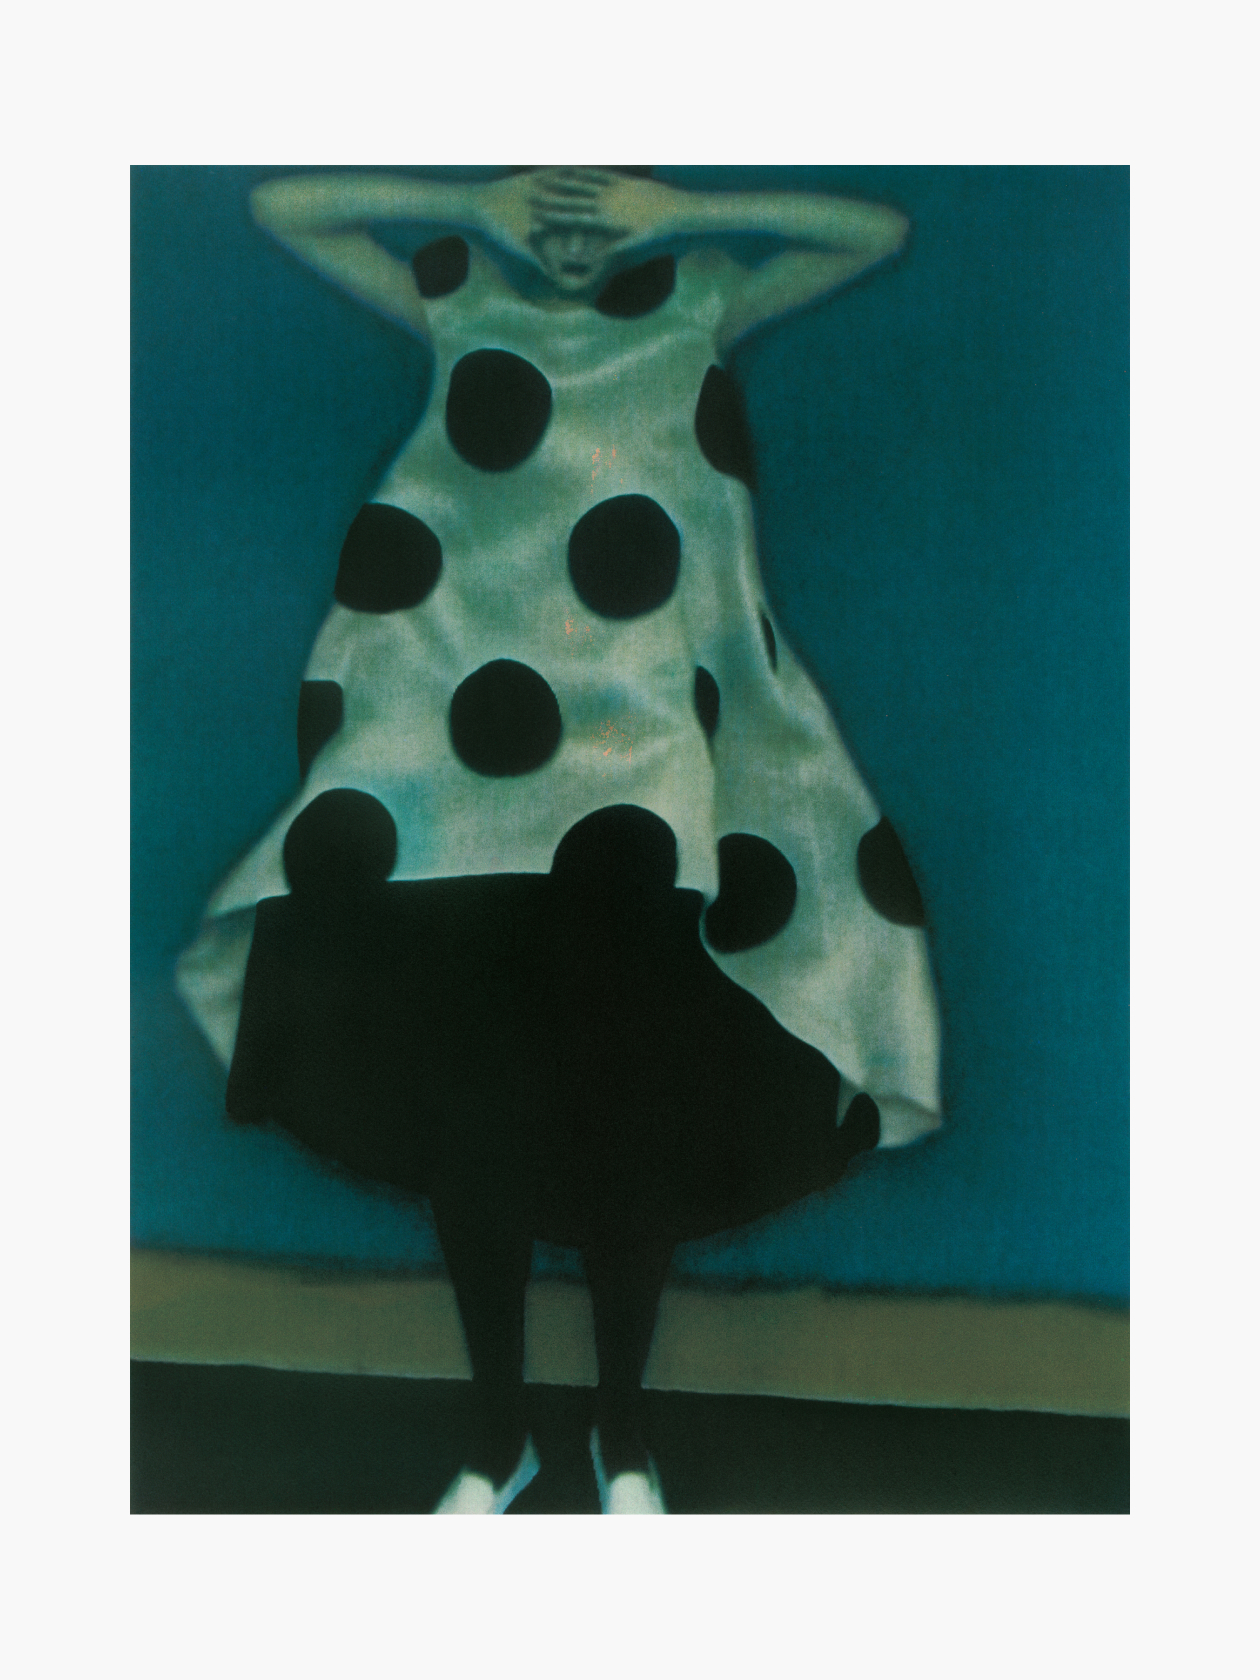 Картина — Сара Мун, «Платье в горошек», 1996. Собрание фонда Still Art. Изображение предоставлено пресс-службой МАММ